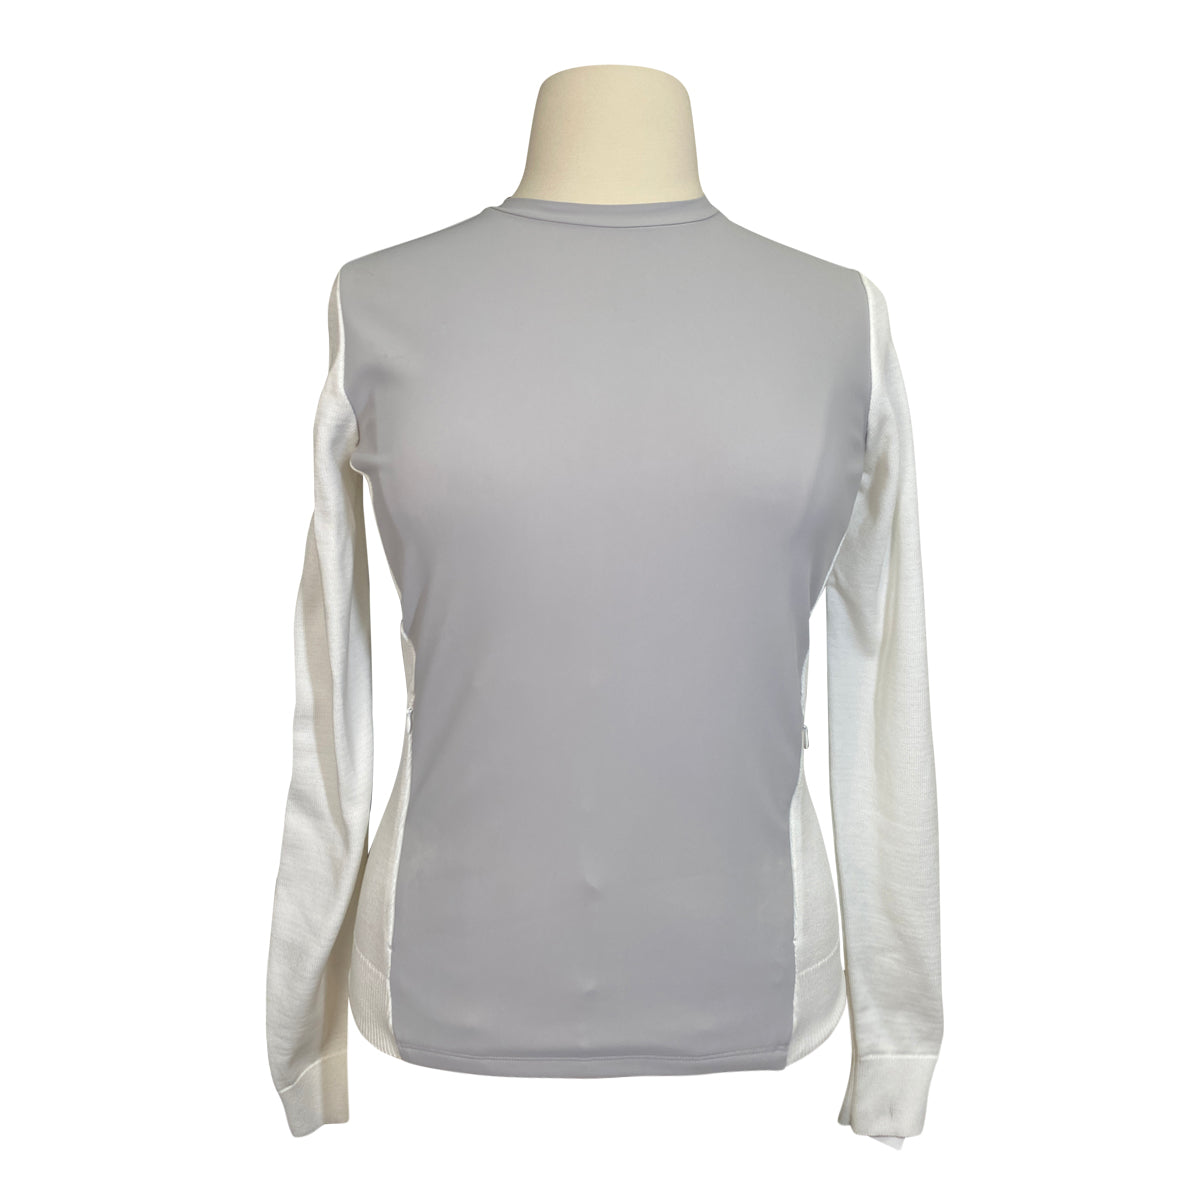 Cavalleria Toscana Softshell Knit Crew Neck Sweatshirt in Grey/White